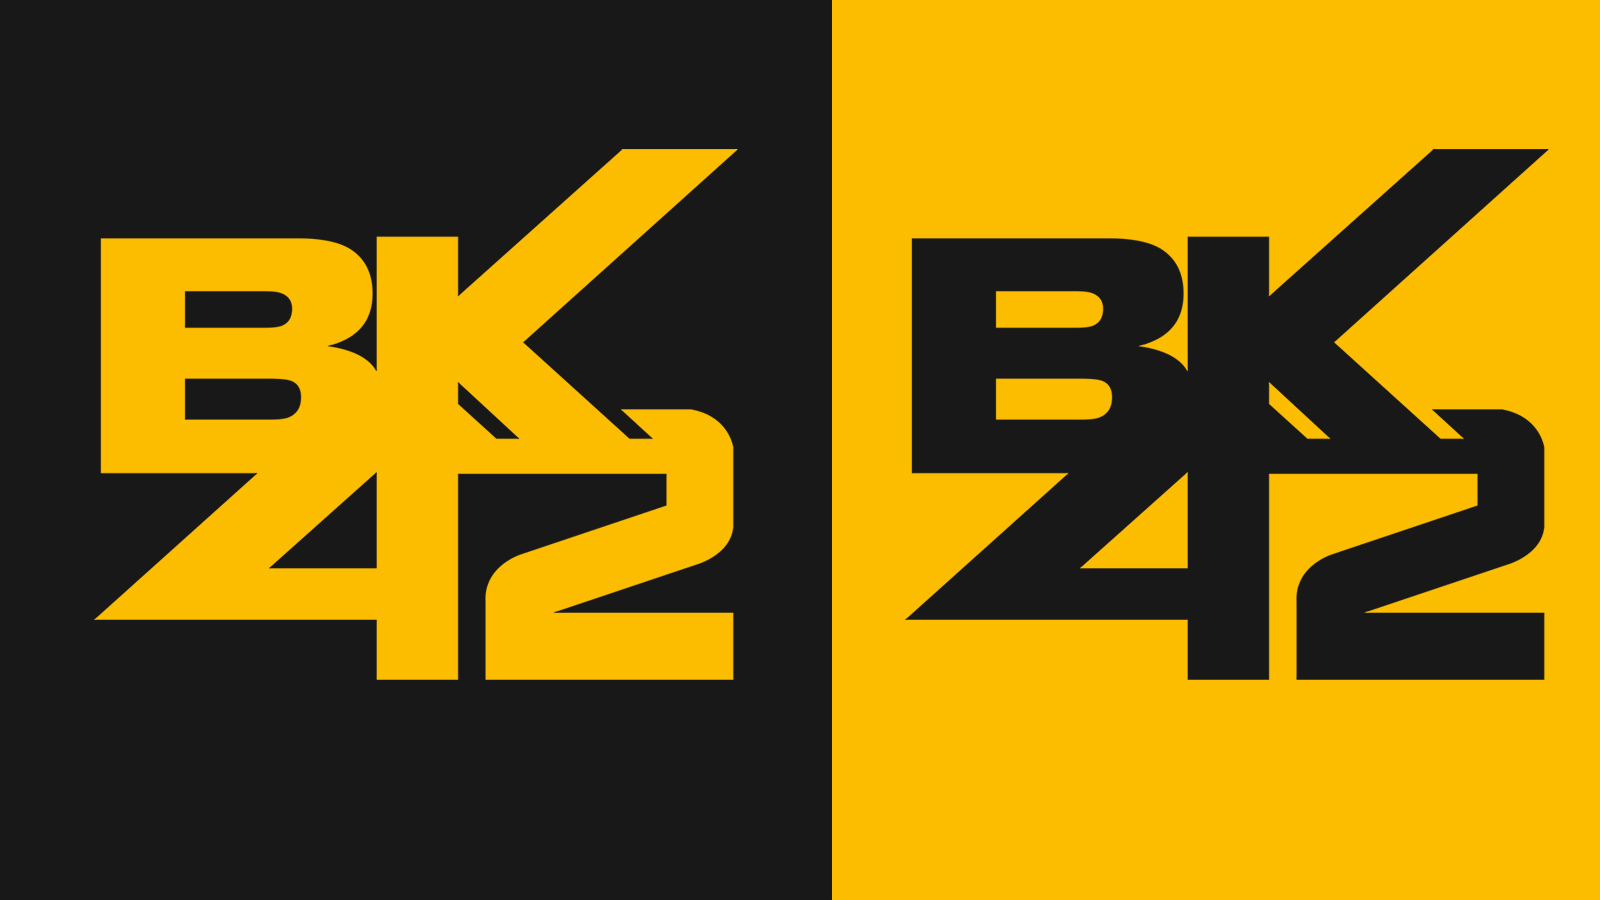 BK42 Logo Design